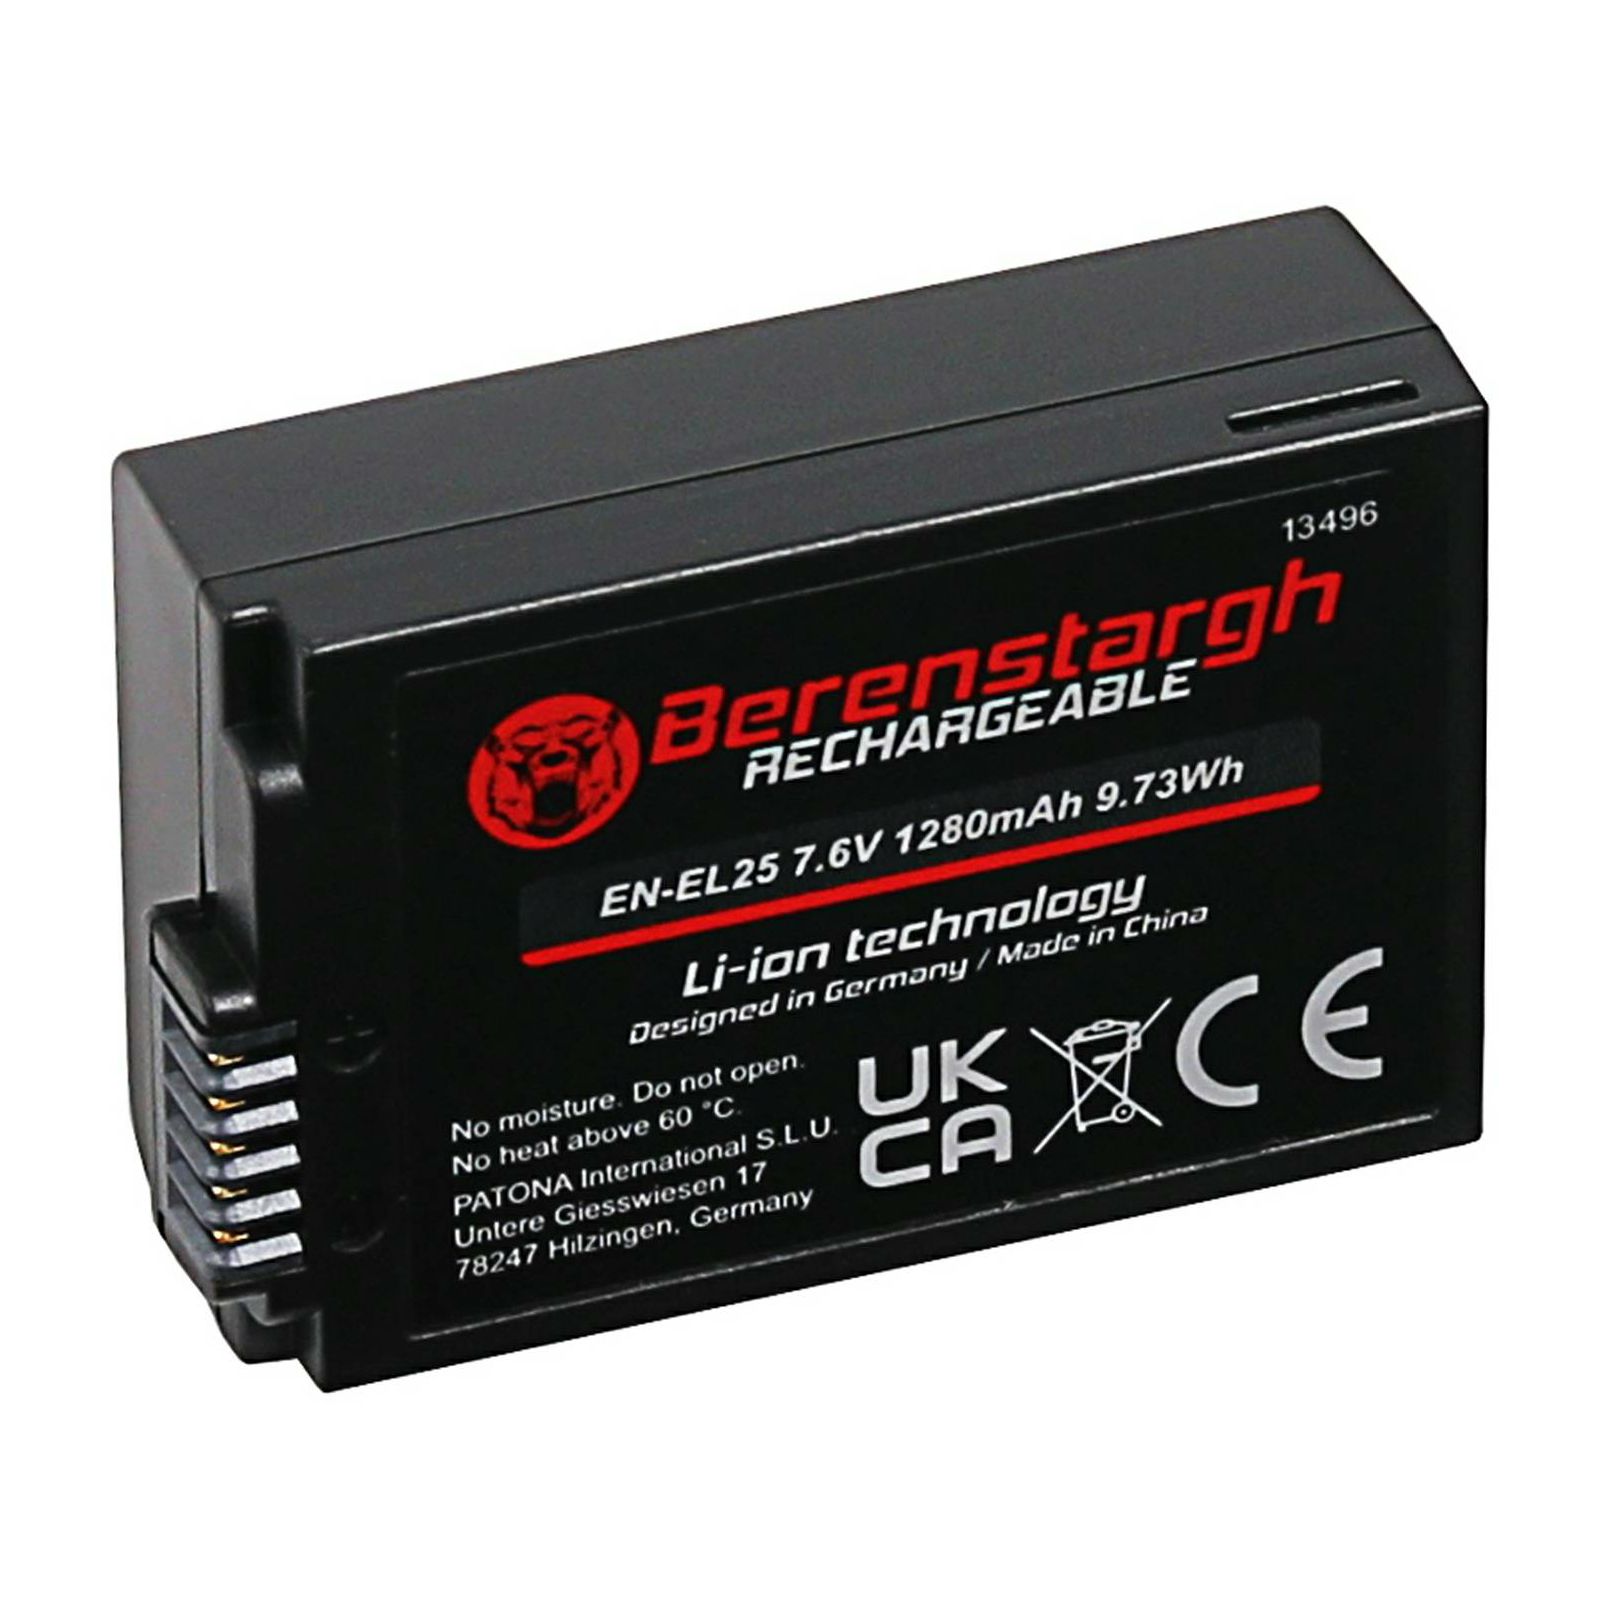 Berenstargh EN-EL25 1280mAh 9.73Wh 7.6V baterija za Nikon Z50, Z30, Z fc Lithium-Ion Battery Pack